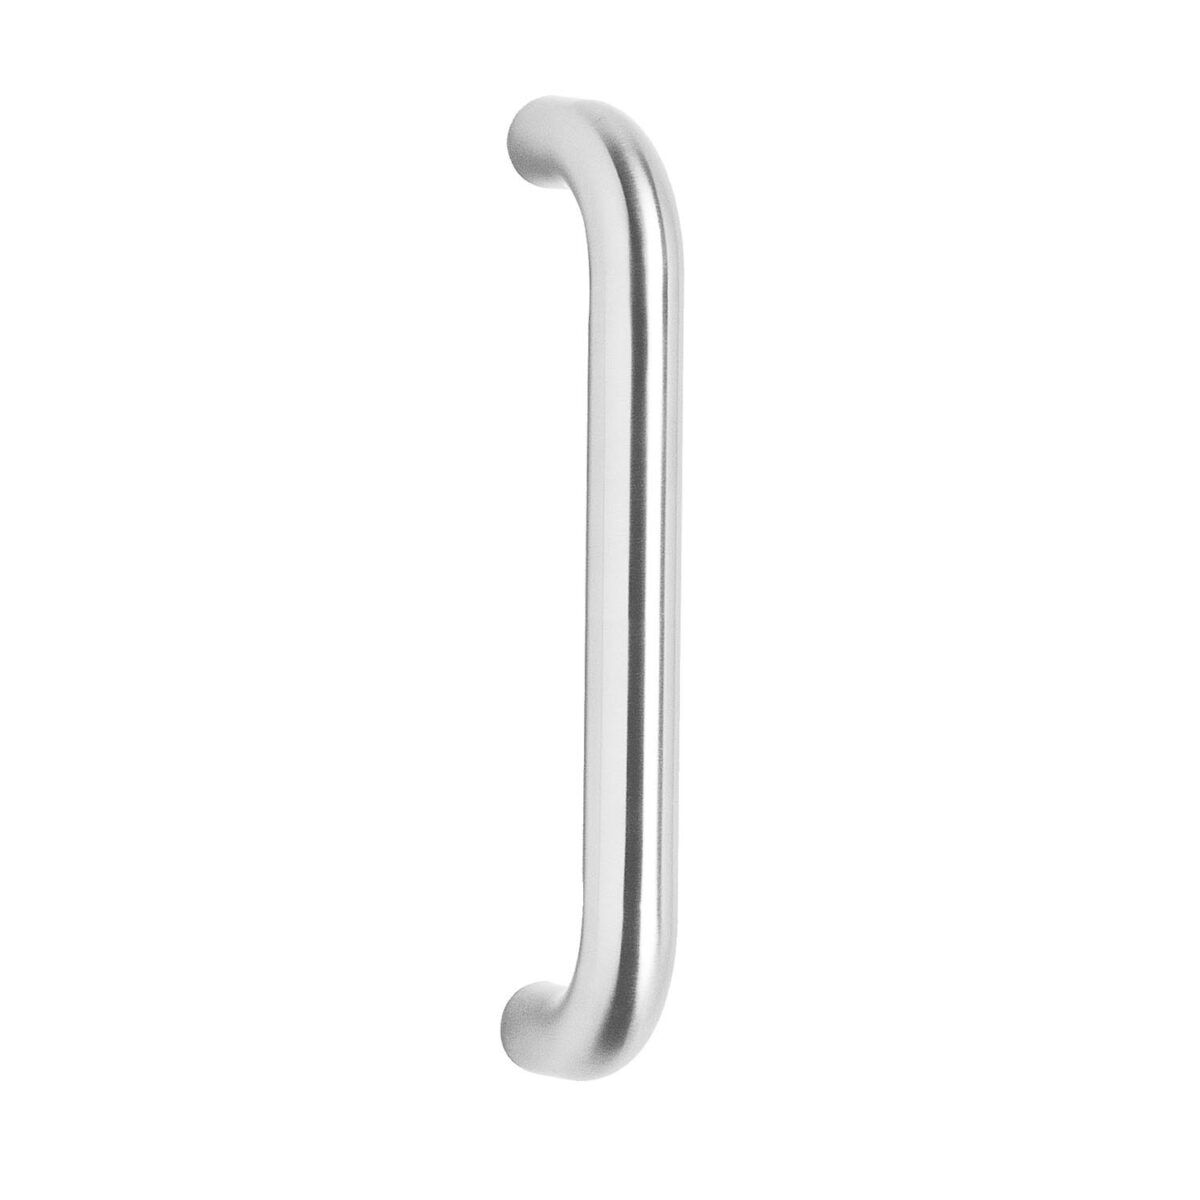 Intersteel Door handles 320 mm U shape brushed stainless steel